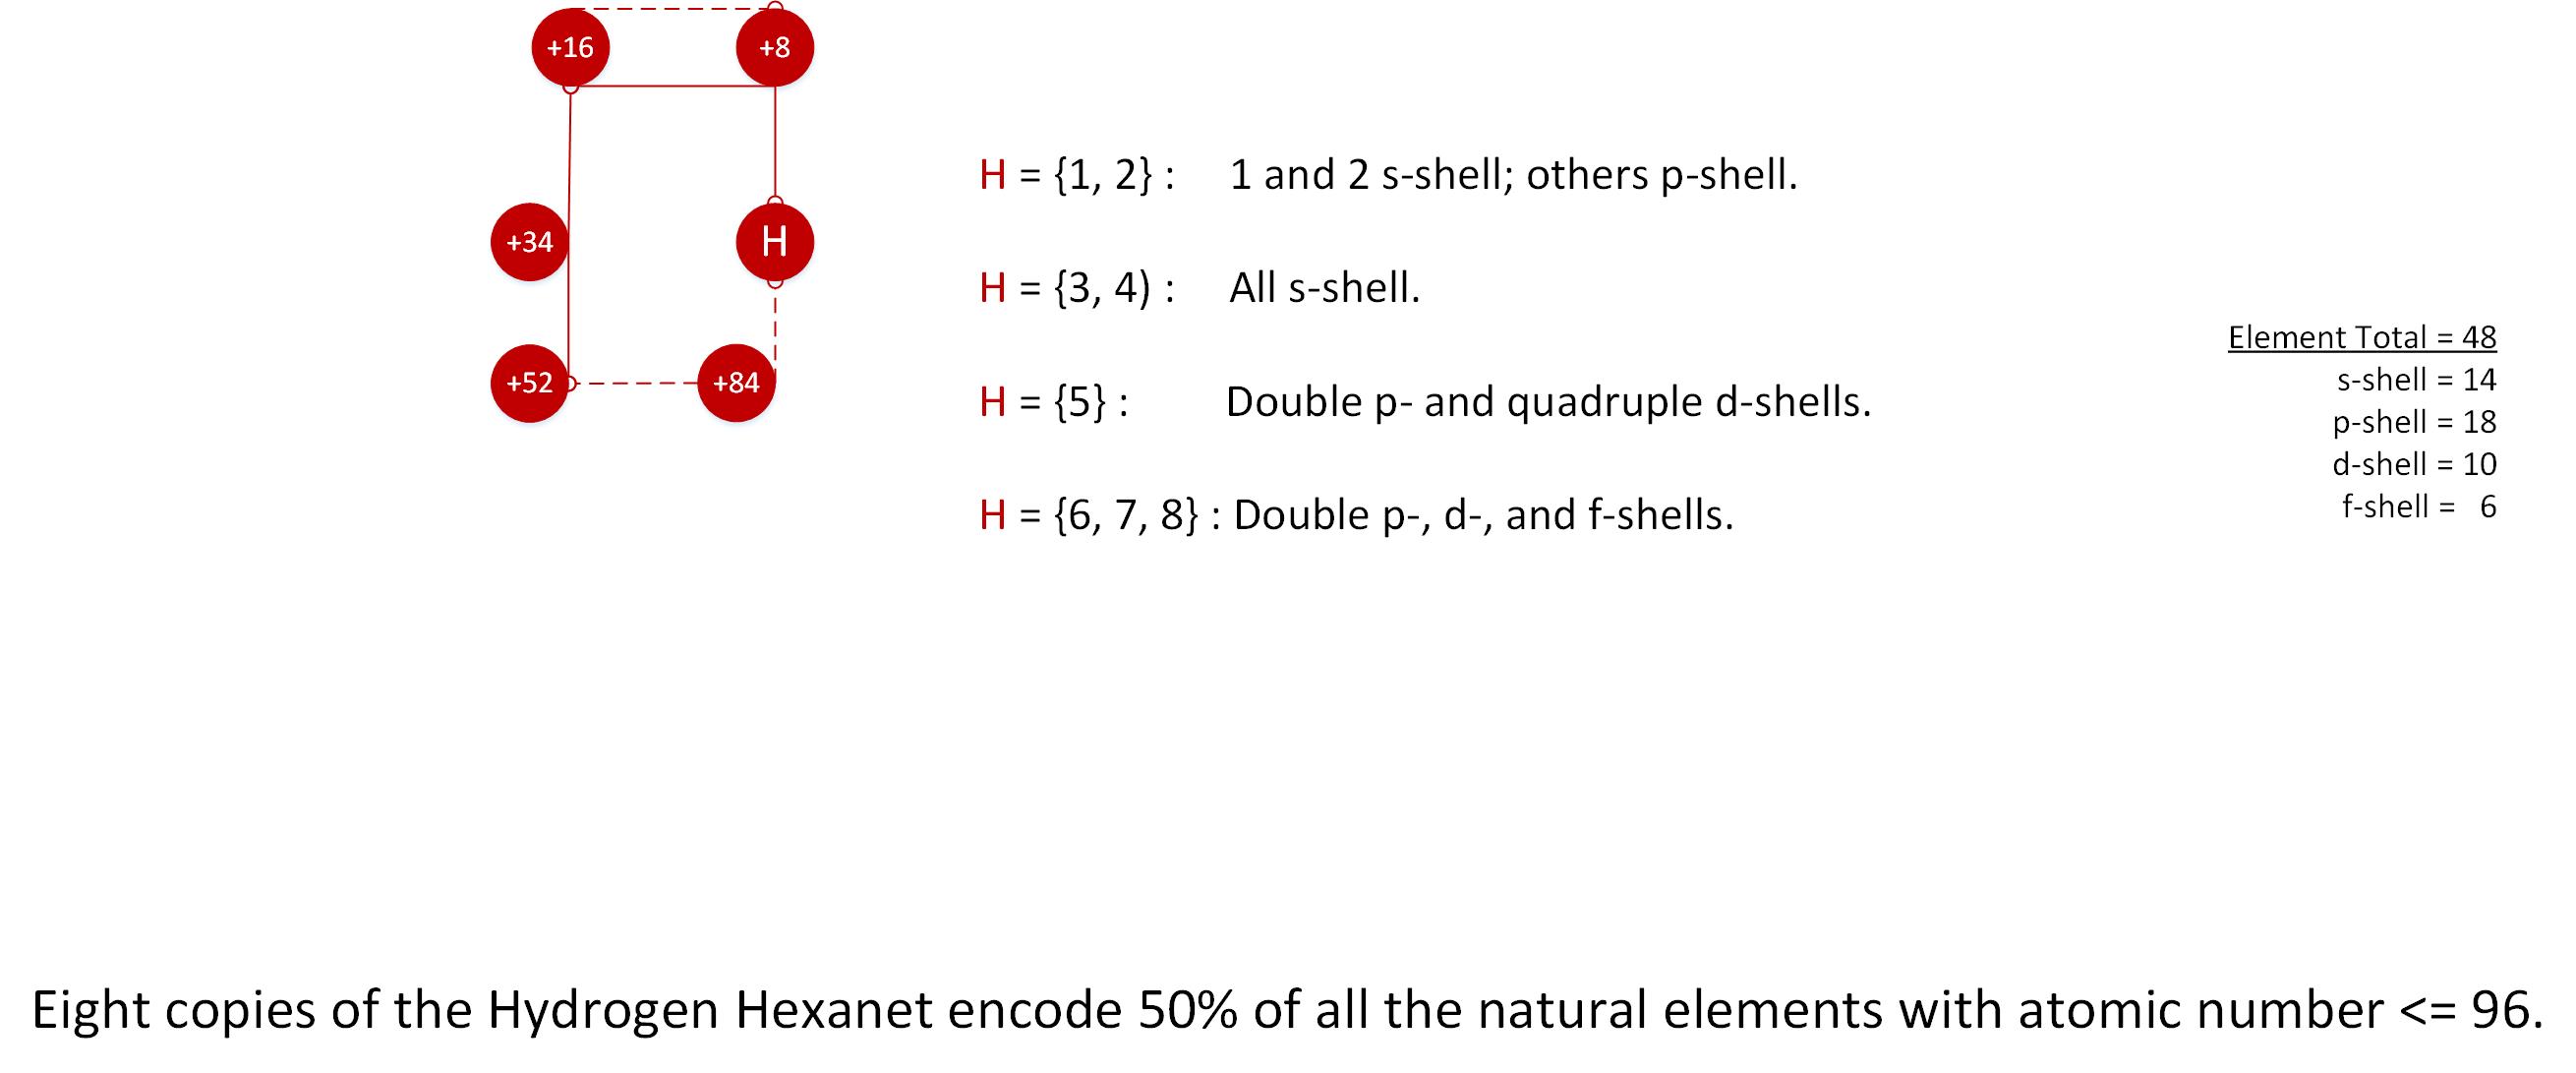 The Hydrogen Hexanet